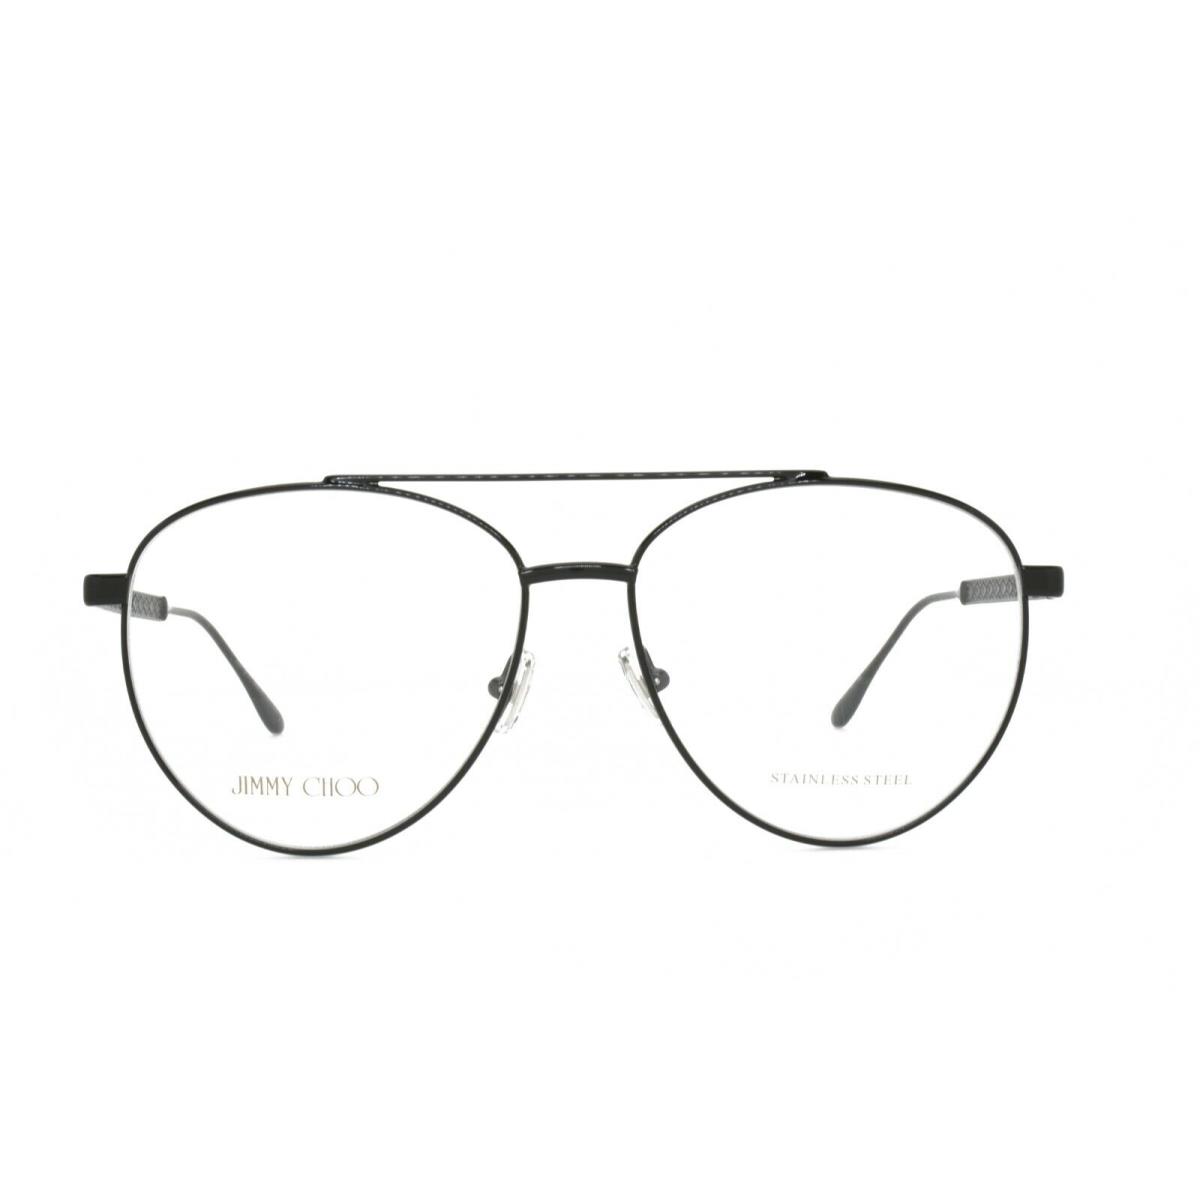 Jimmy Choo Women`s Eyeglasses JC 216 807 58-15-140 Black Stainless Steel - Black, Frame: Black